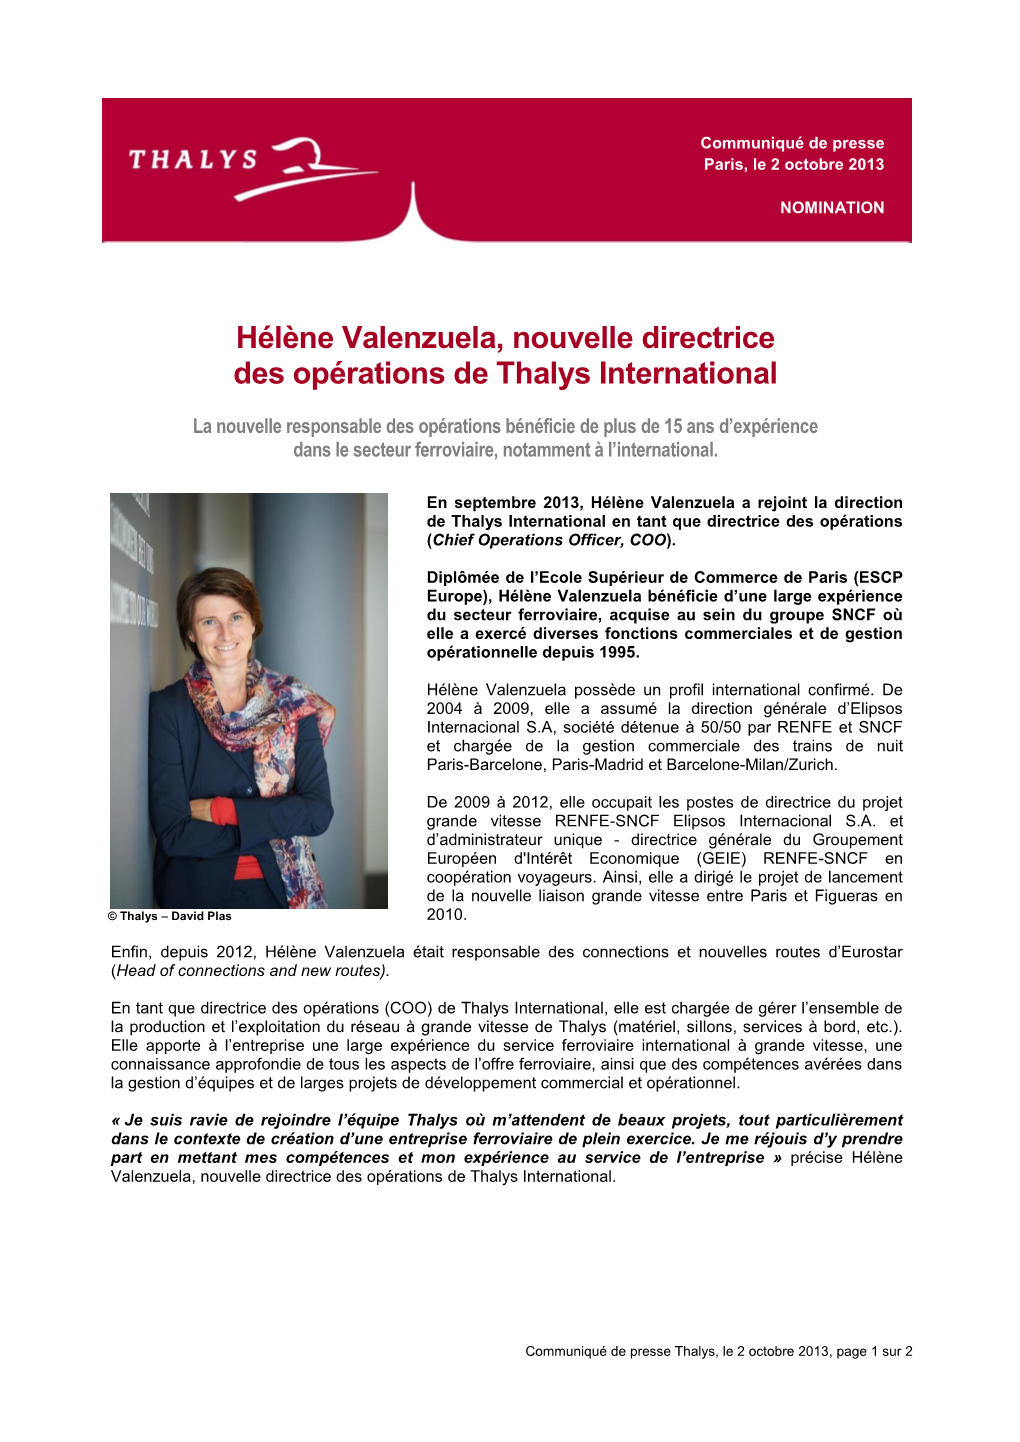 Hélène Valenzuela, Nouvelle Directrice Des Opérations De Thalys International